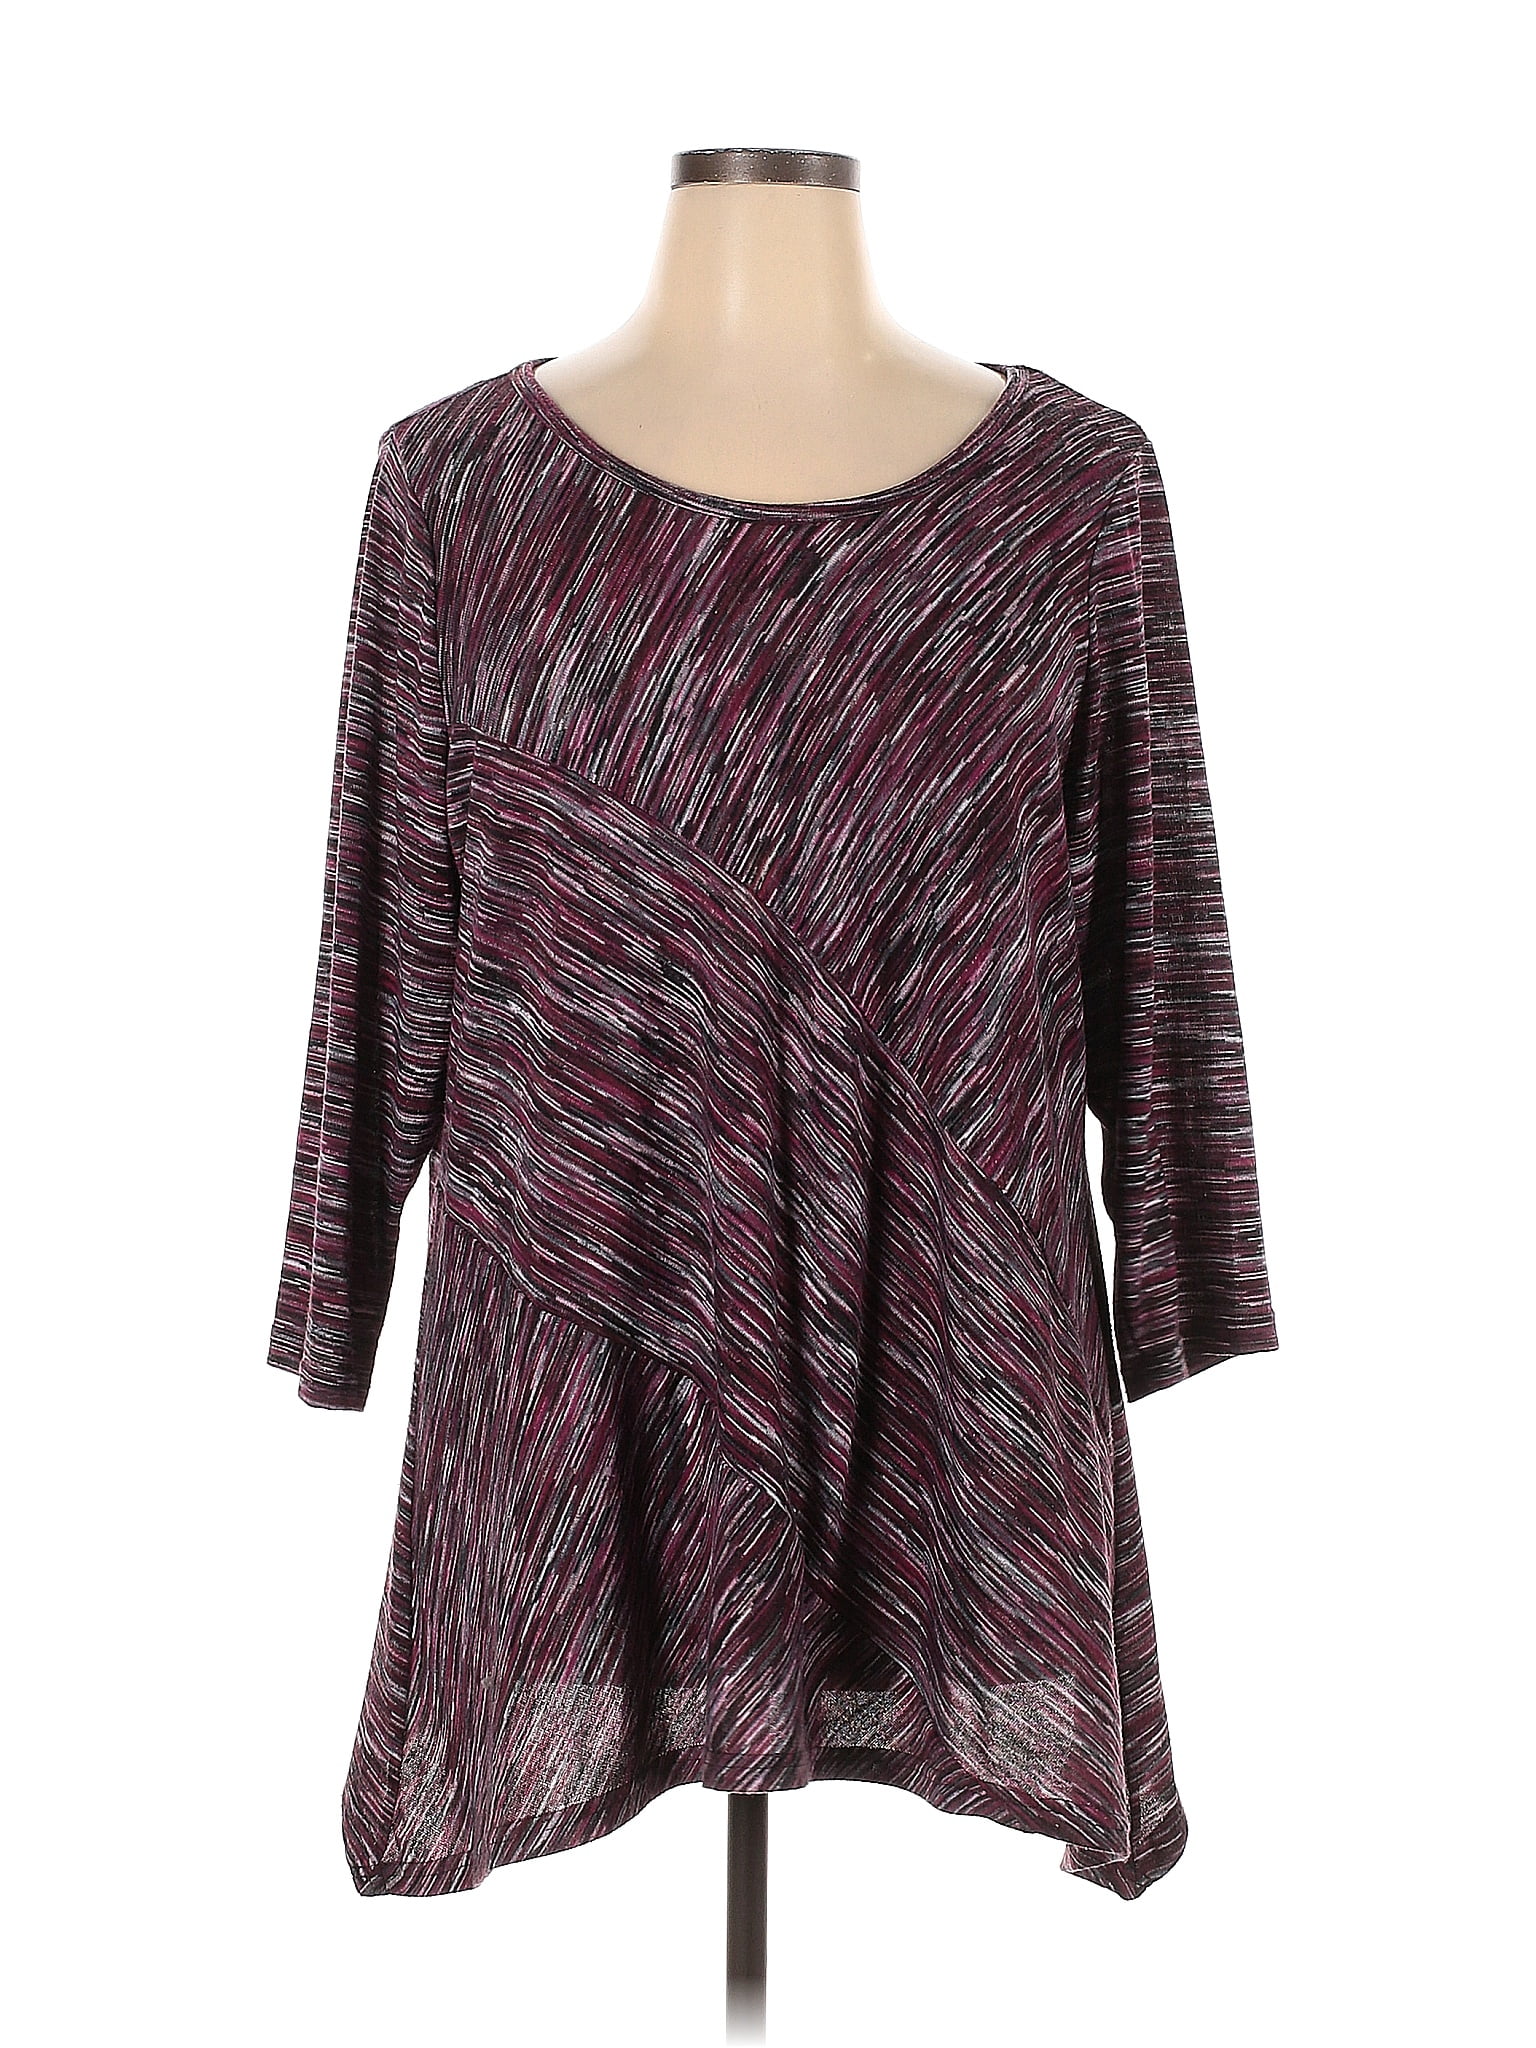 Zac & Rachel Multi Color Purple Pullover Sweater Size 2X (Plus) - 47% ...